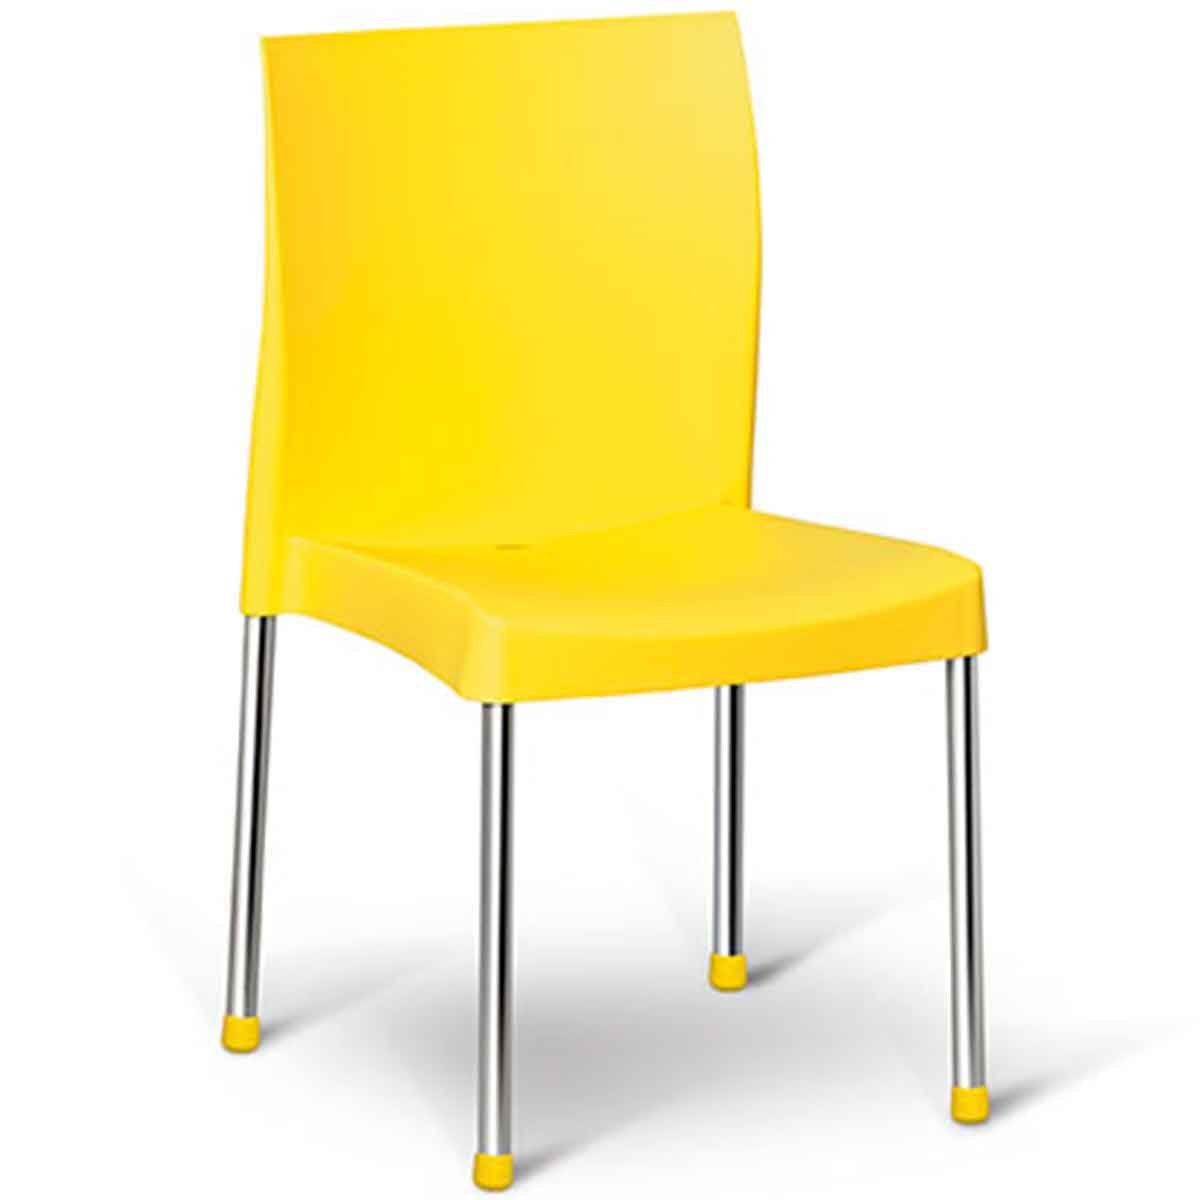 kit 4 cadeiras de polipropileno coraline amarelo 2